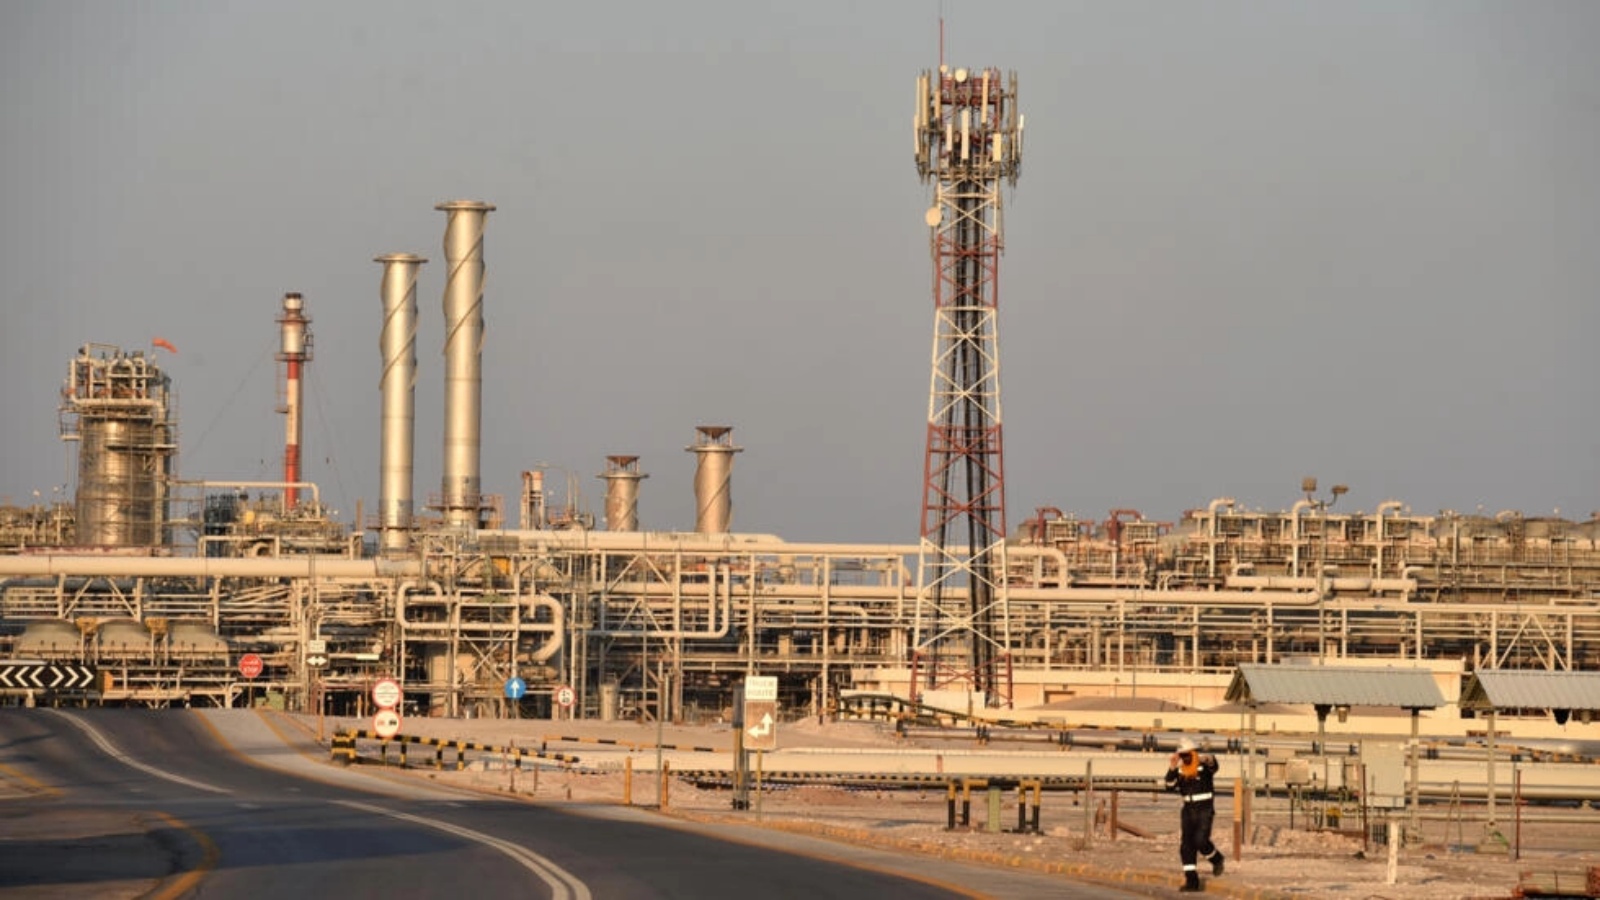 المجموعة النفطية السعودية ارامكو في بقيق في 20 سبتمبر 2020